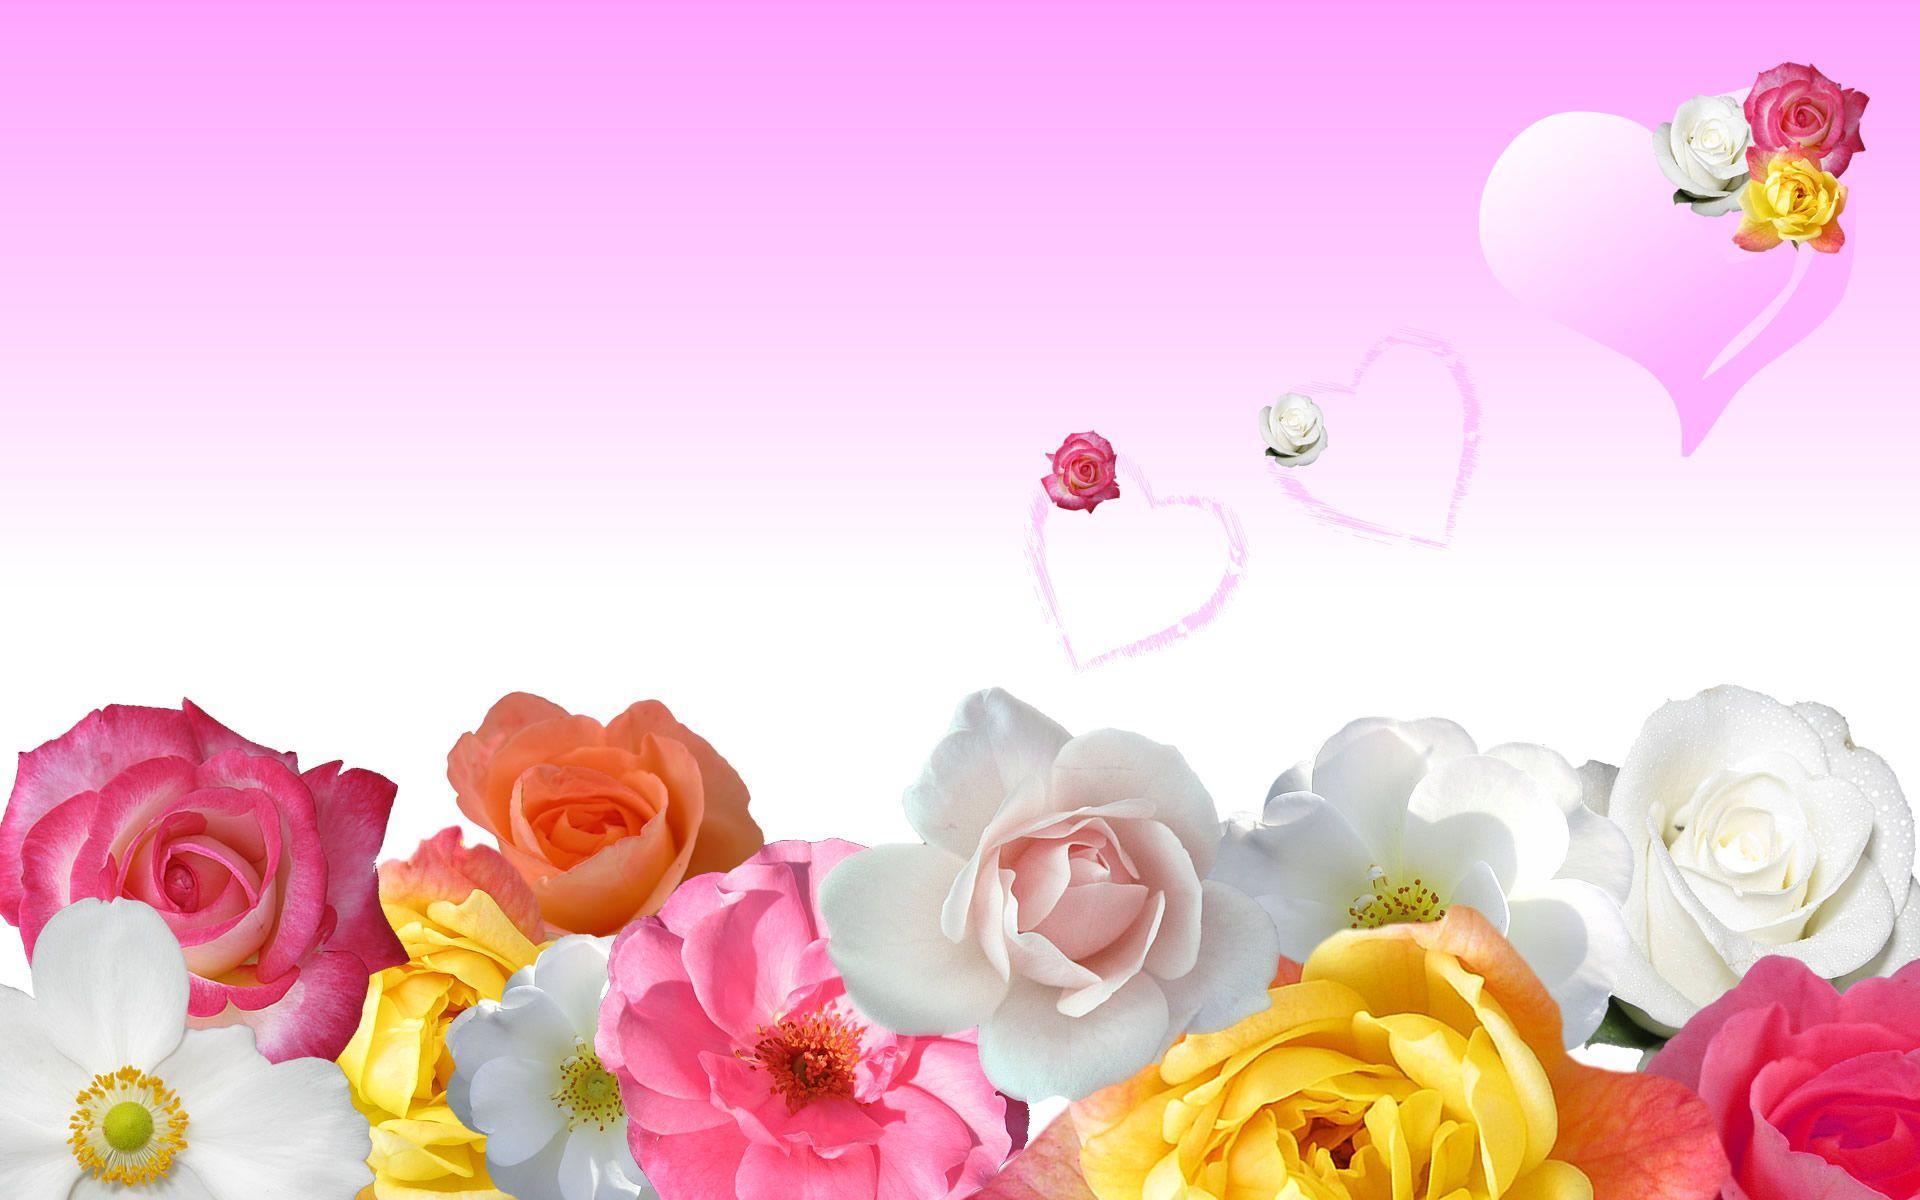 Rose Flower Wallpaper. Free Desk Wallpaper